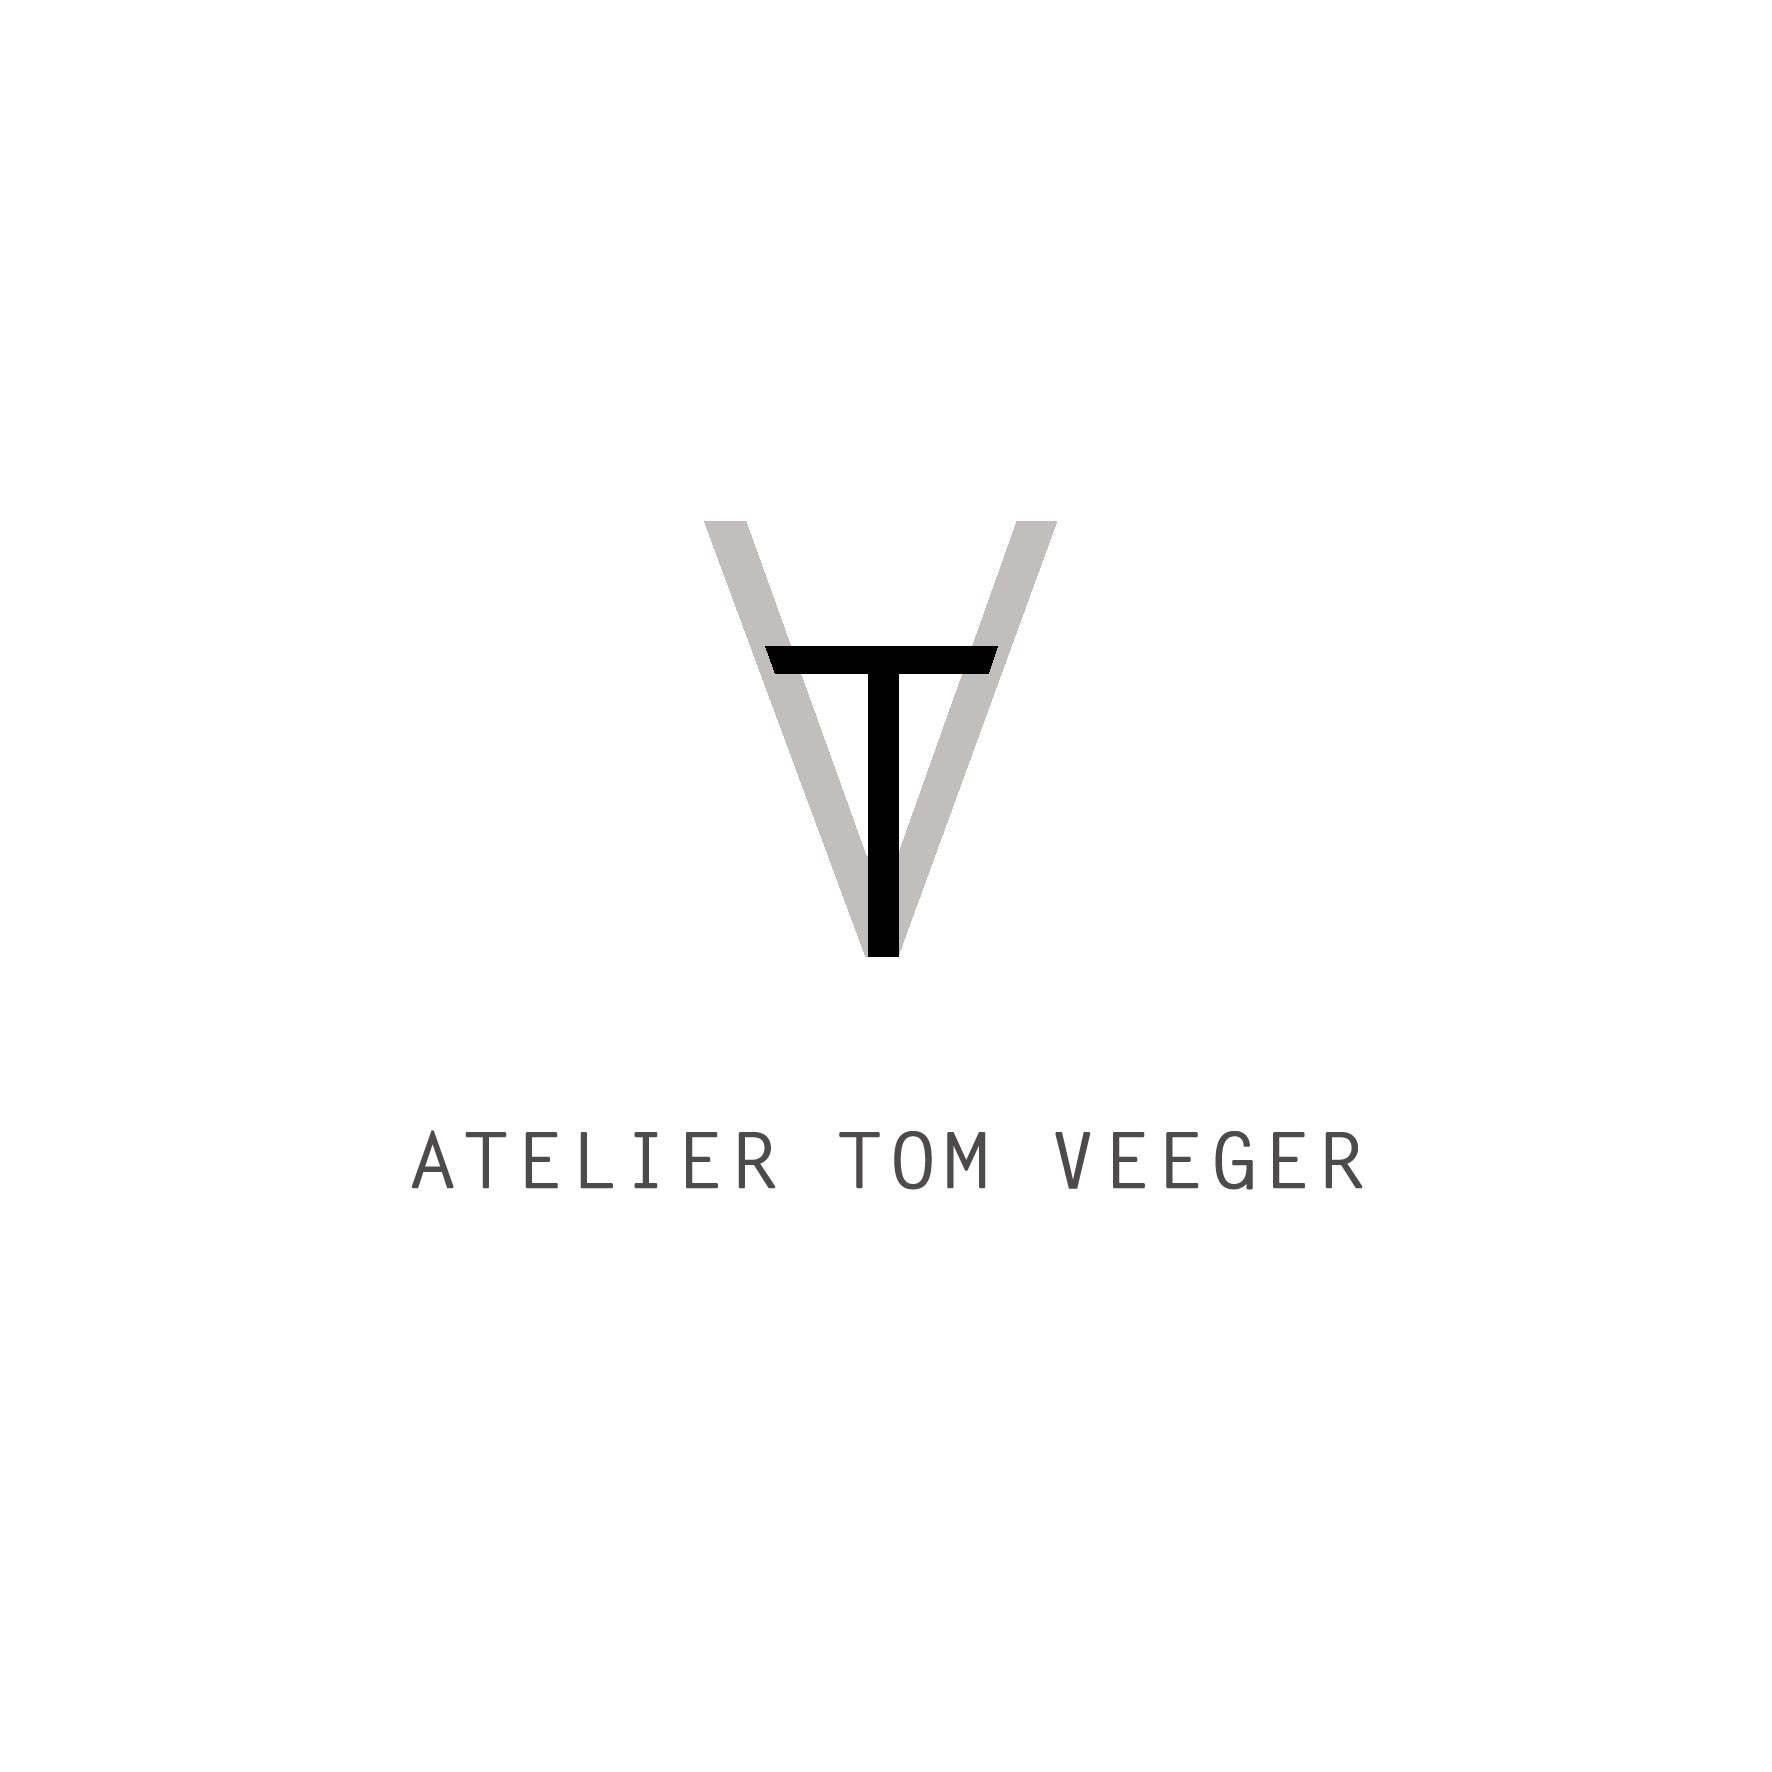 Atelier Tom Veeger